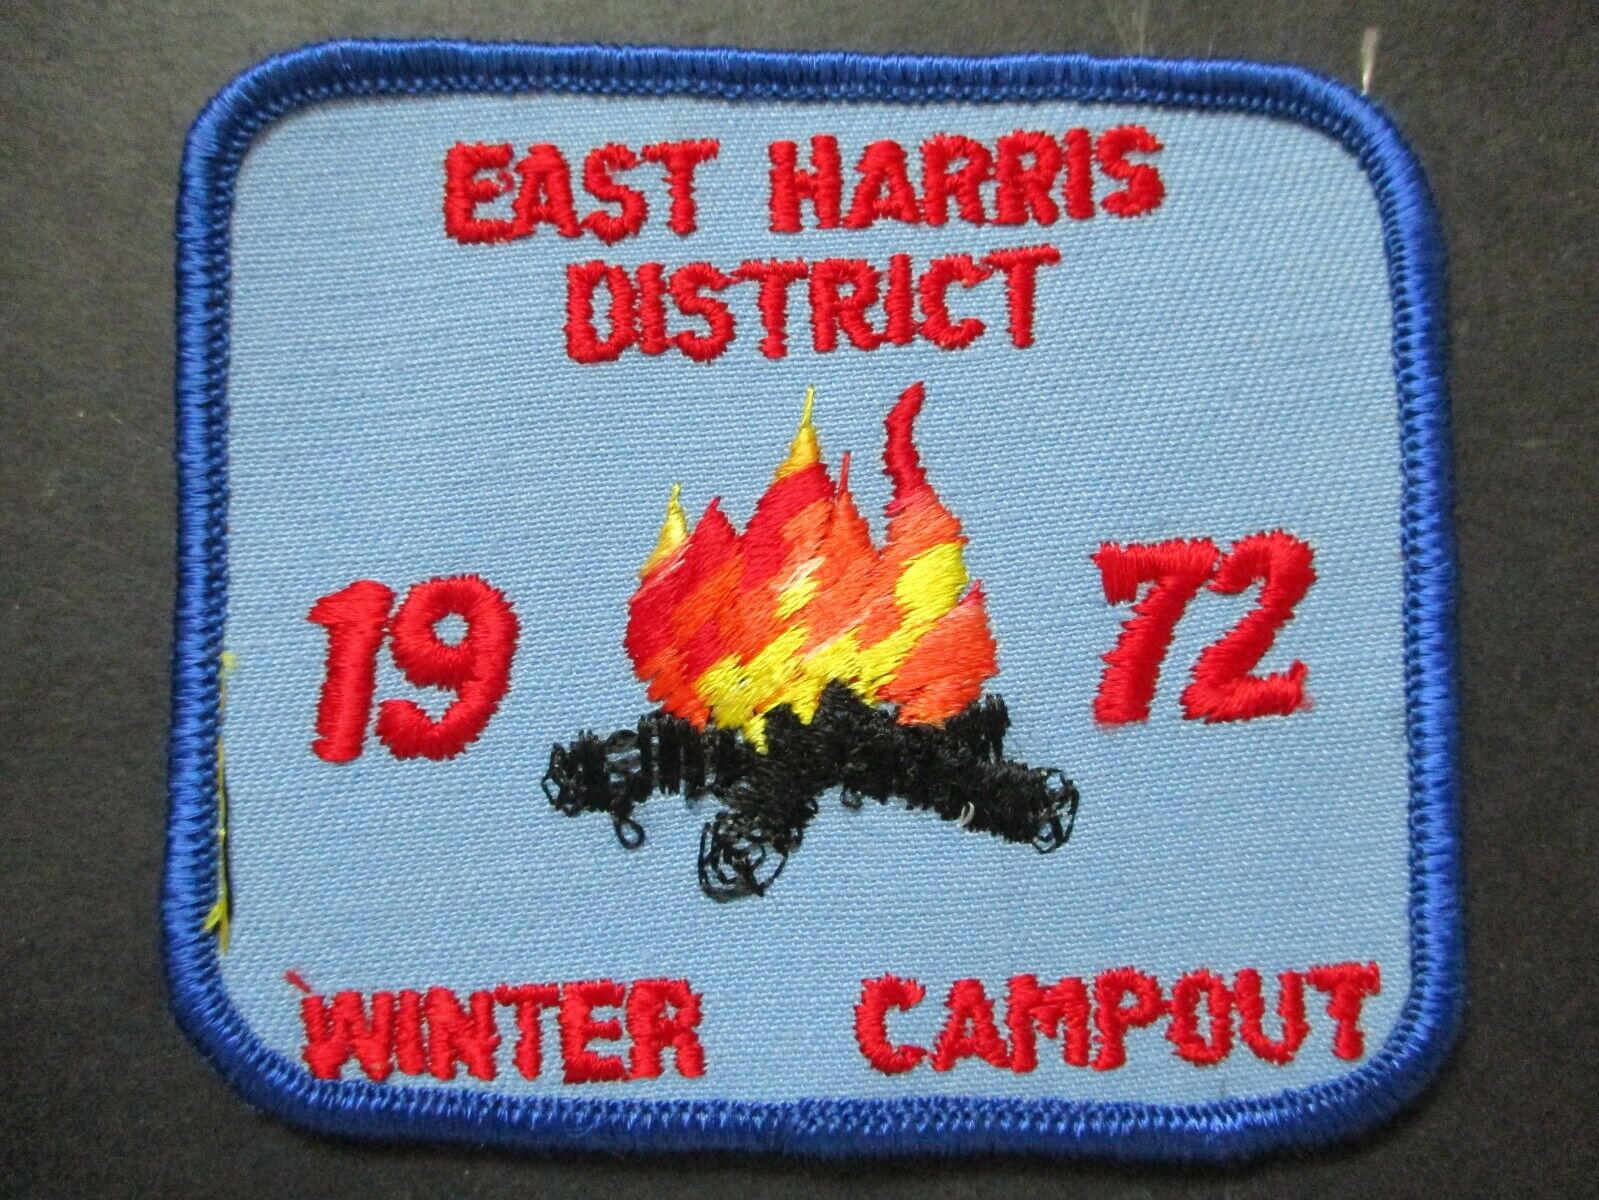 1972 East Harris District Winter Campout boy scout patch